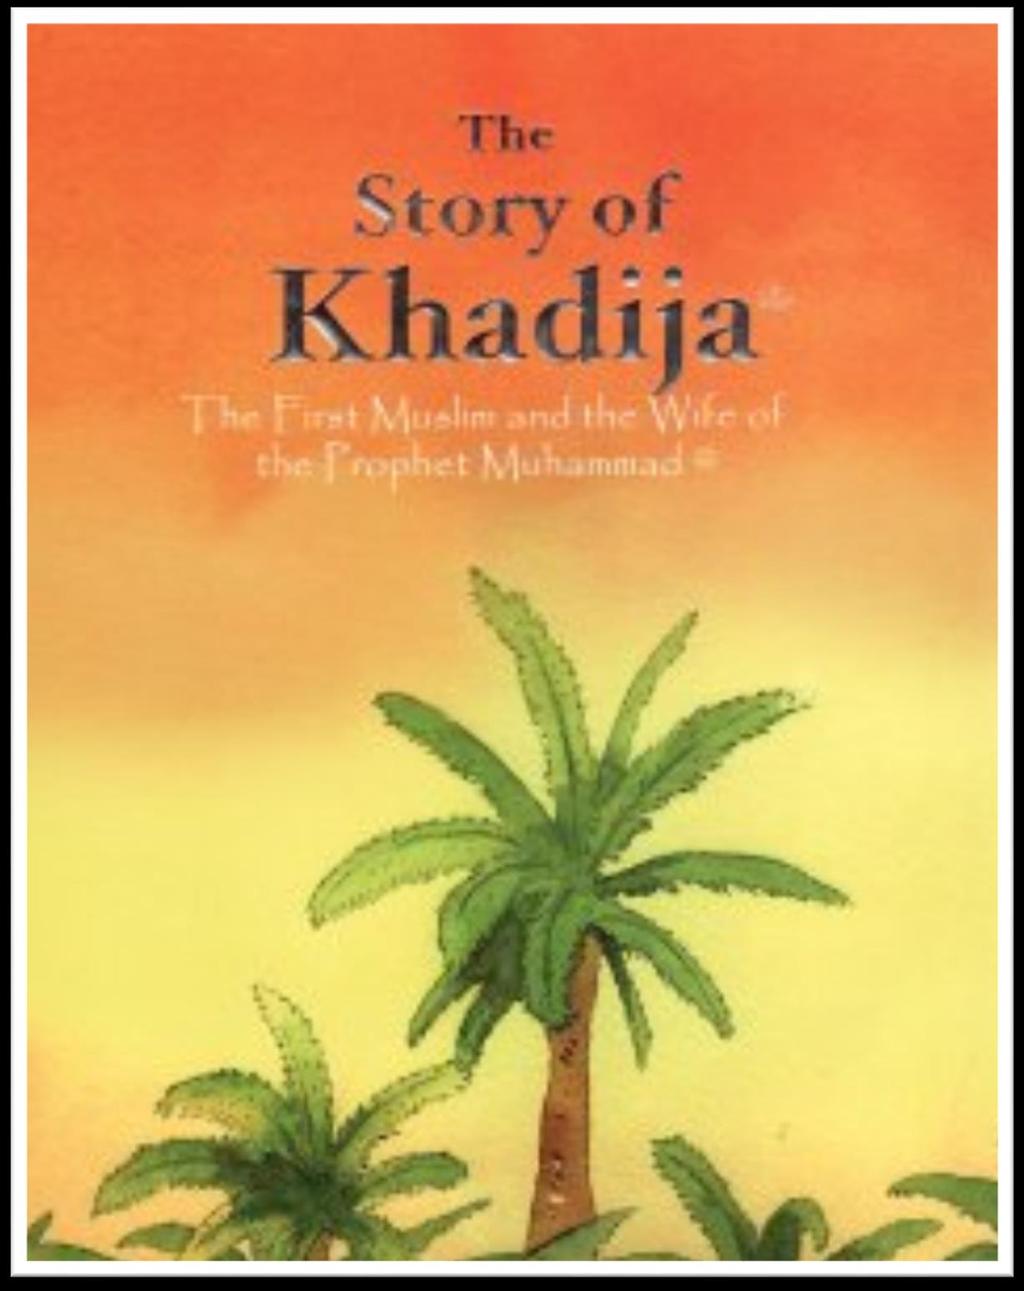 Khadidja Muhammeds först hustru.